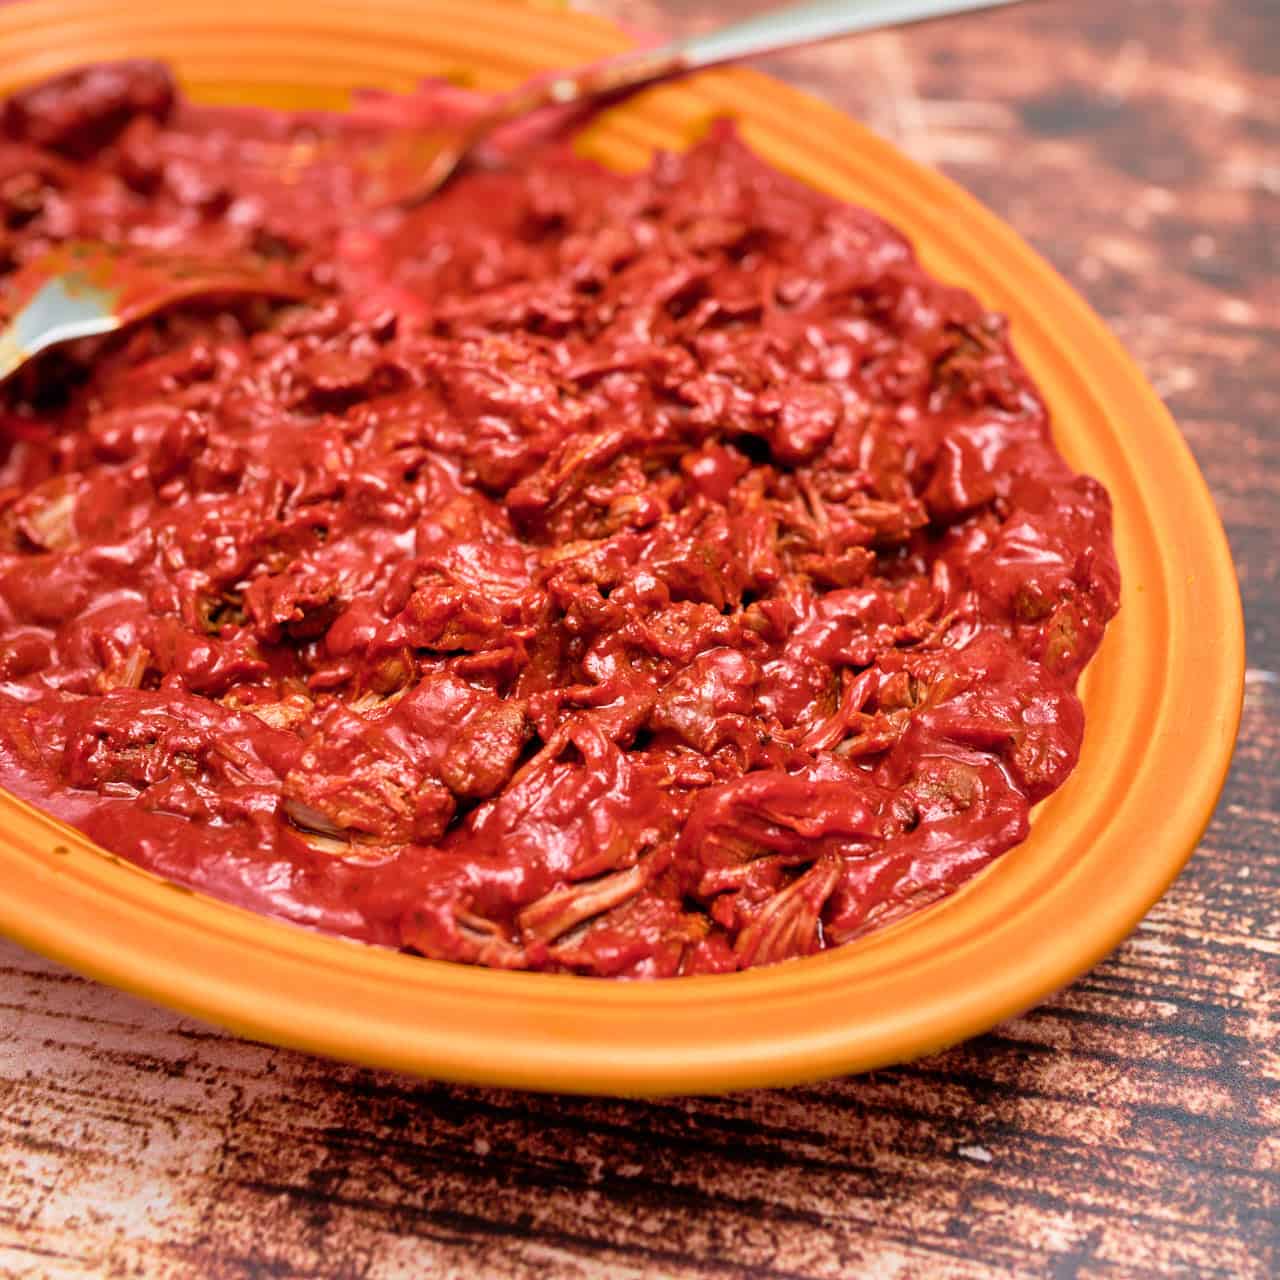 A platter of shredded Red Chile Pork